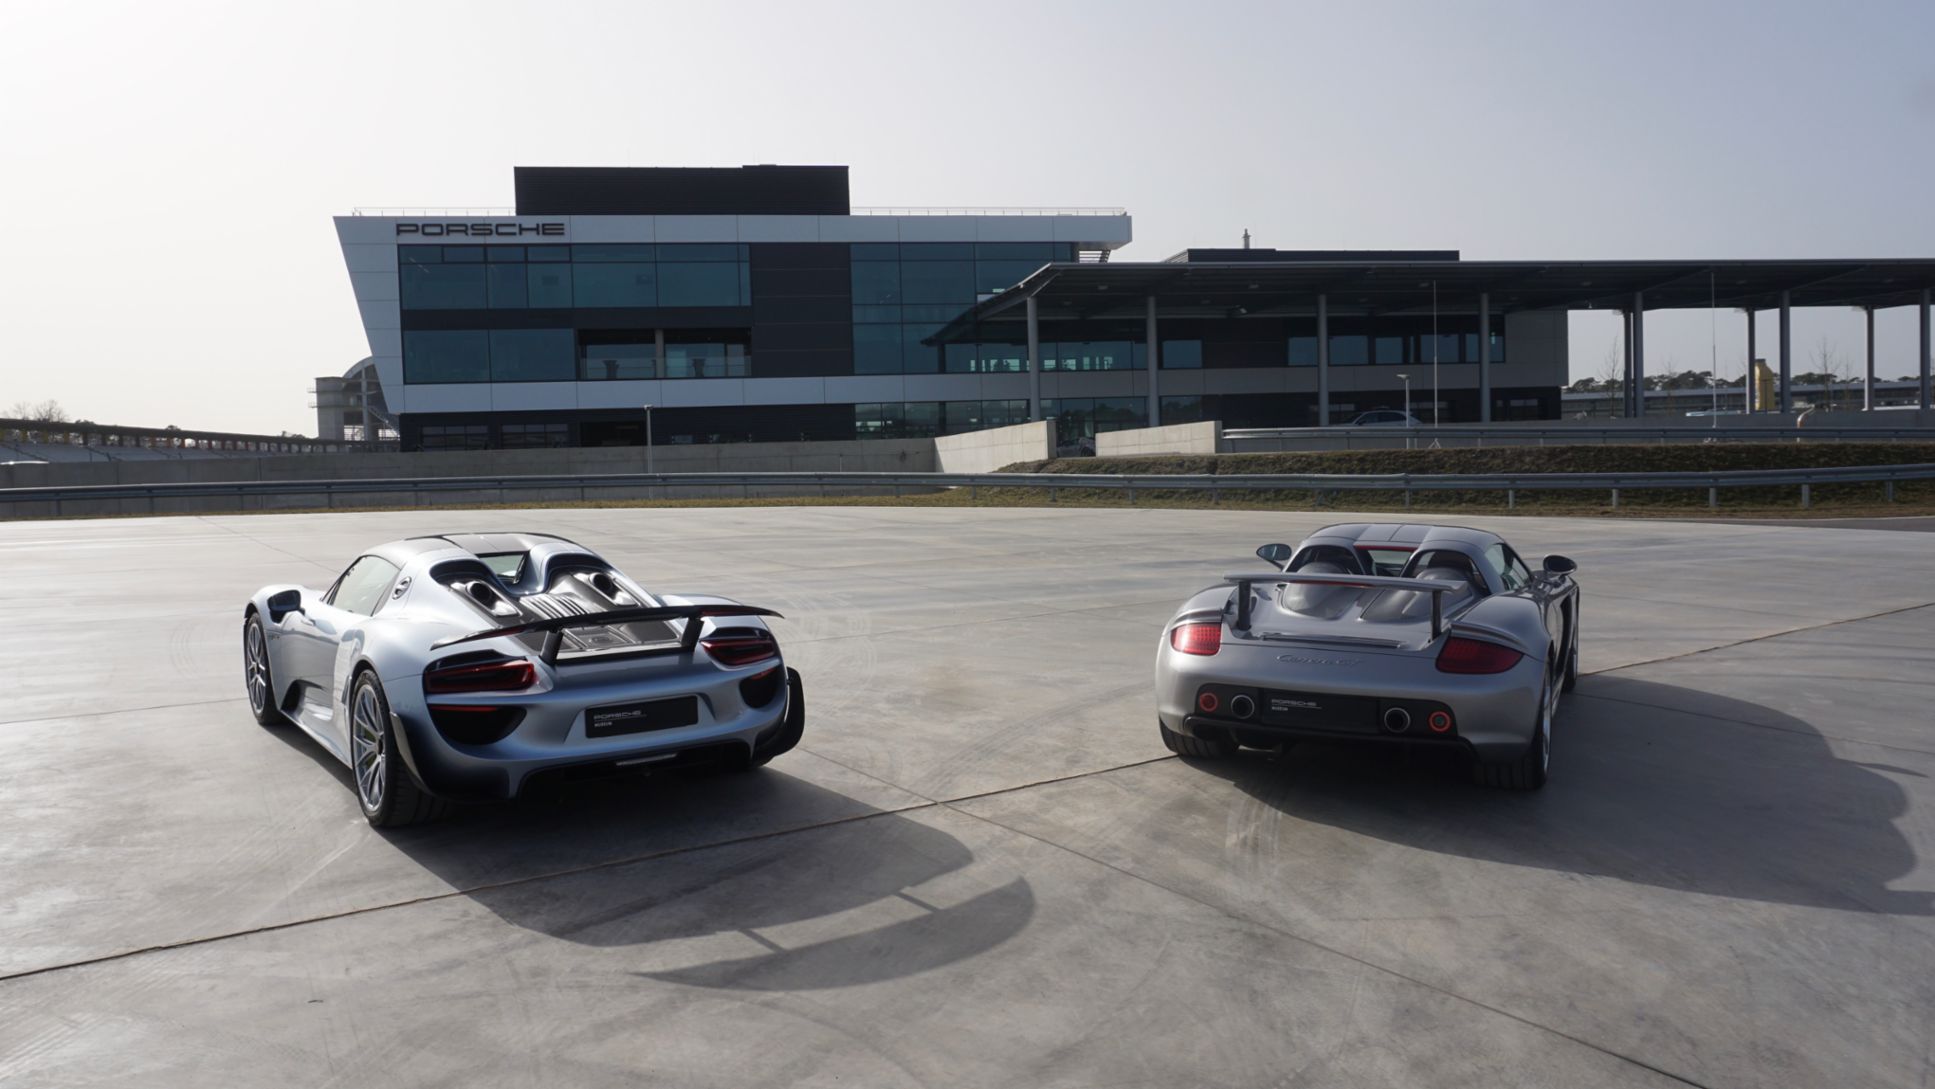 918 Spyder, Carrera GT, Porsche Experience Center Hockenheimring, 2021, Porsche AG